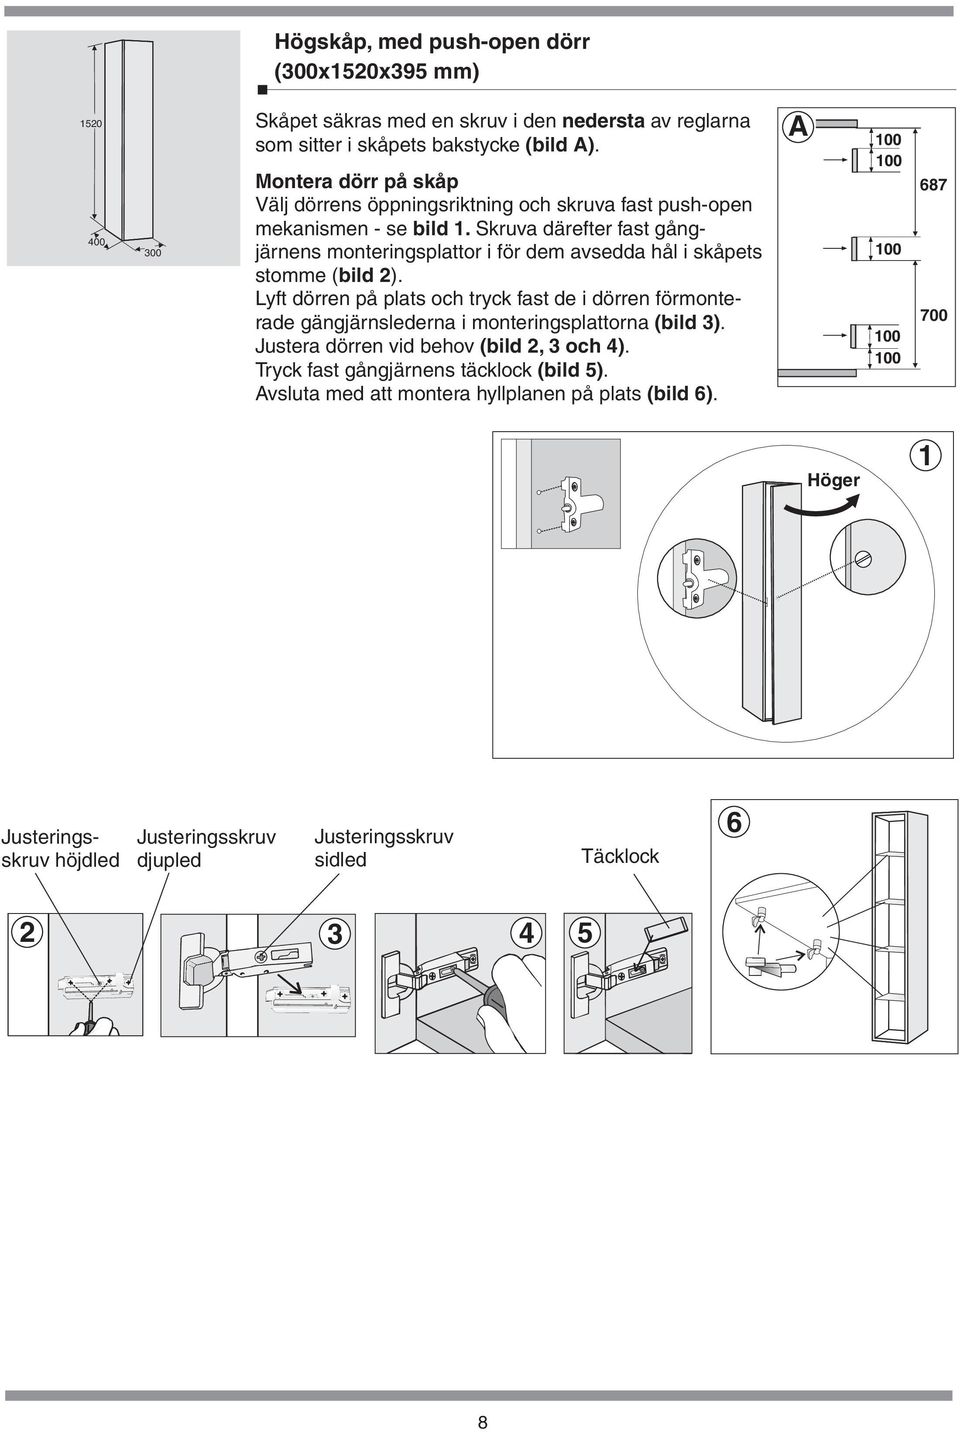 skåpets stomme ( bild 2) Lyft dörren på plats och tryck fast de i dörren förmonterade gängjärnslederna i monteringsplattorna (bild 3) Justera dörren vid behov